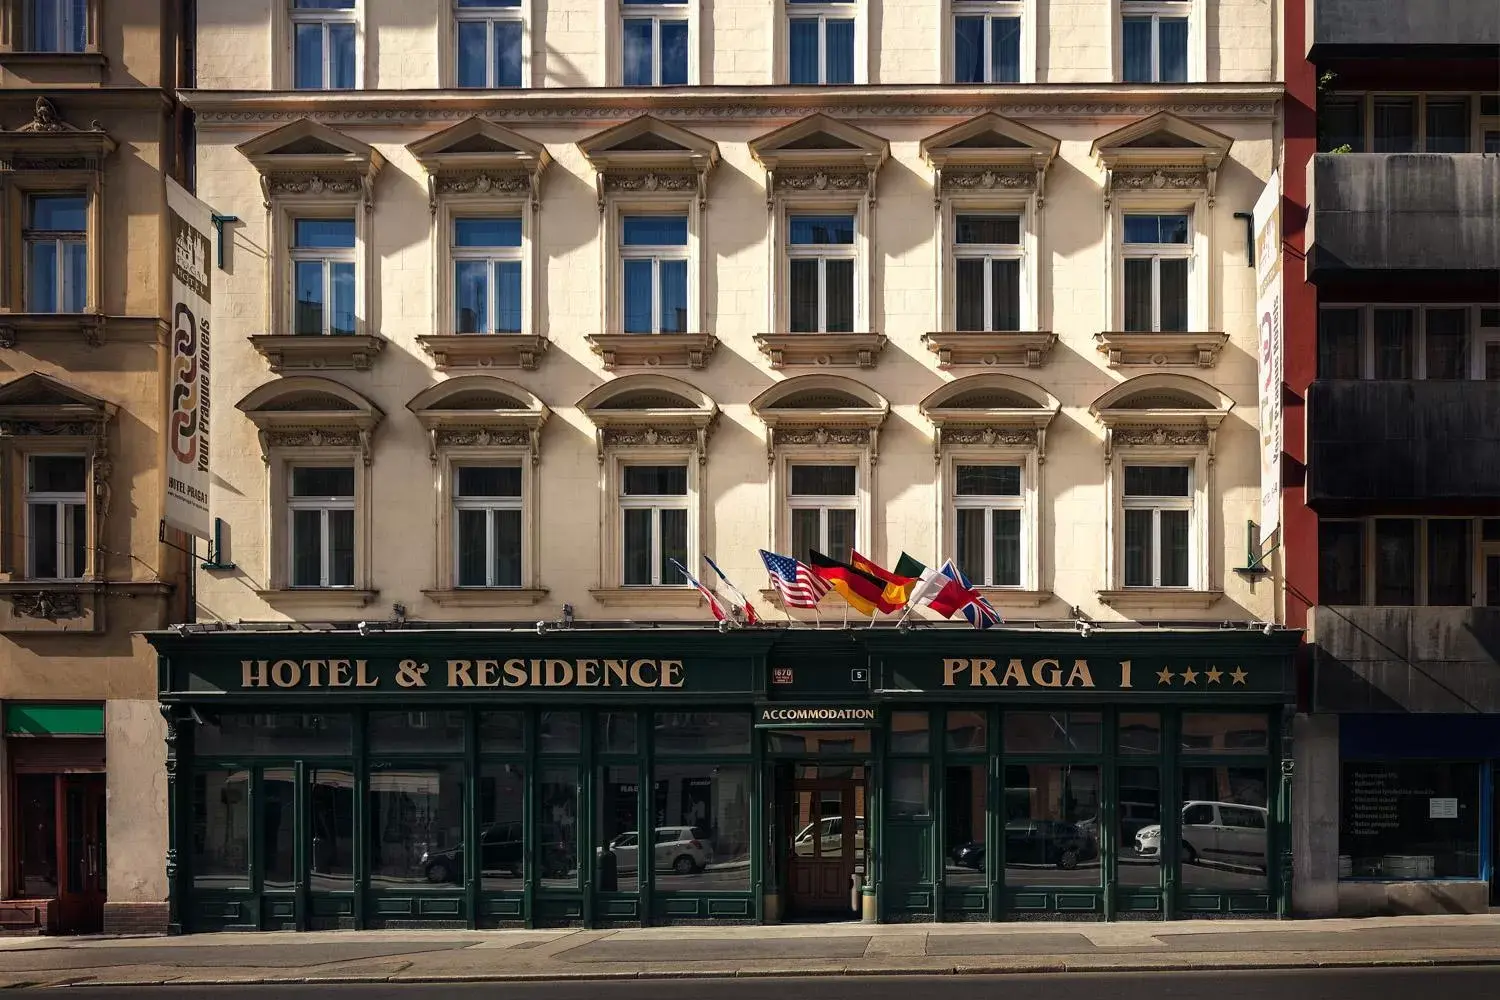 Property Building in Hotel Praga 1